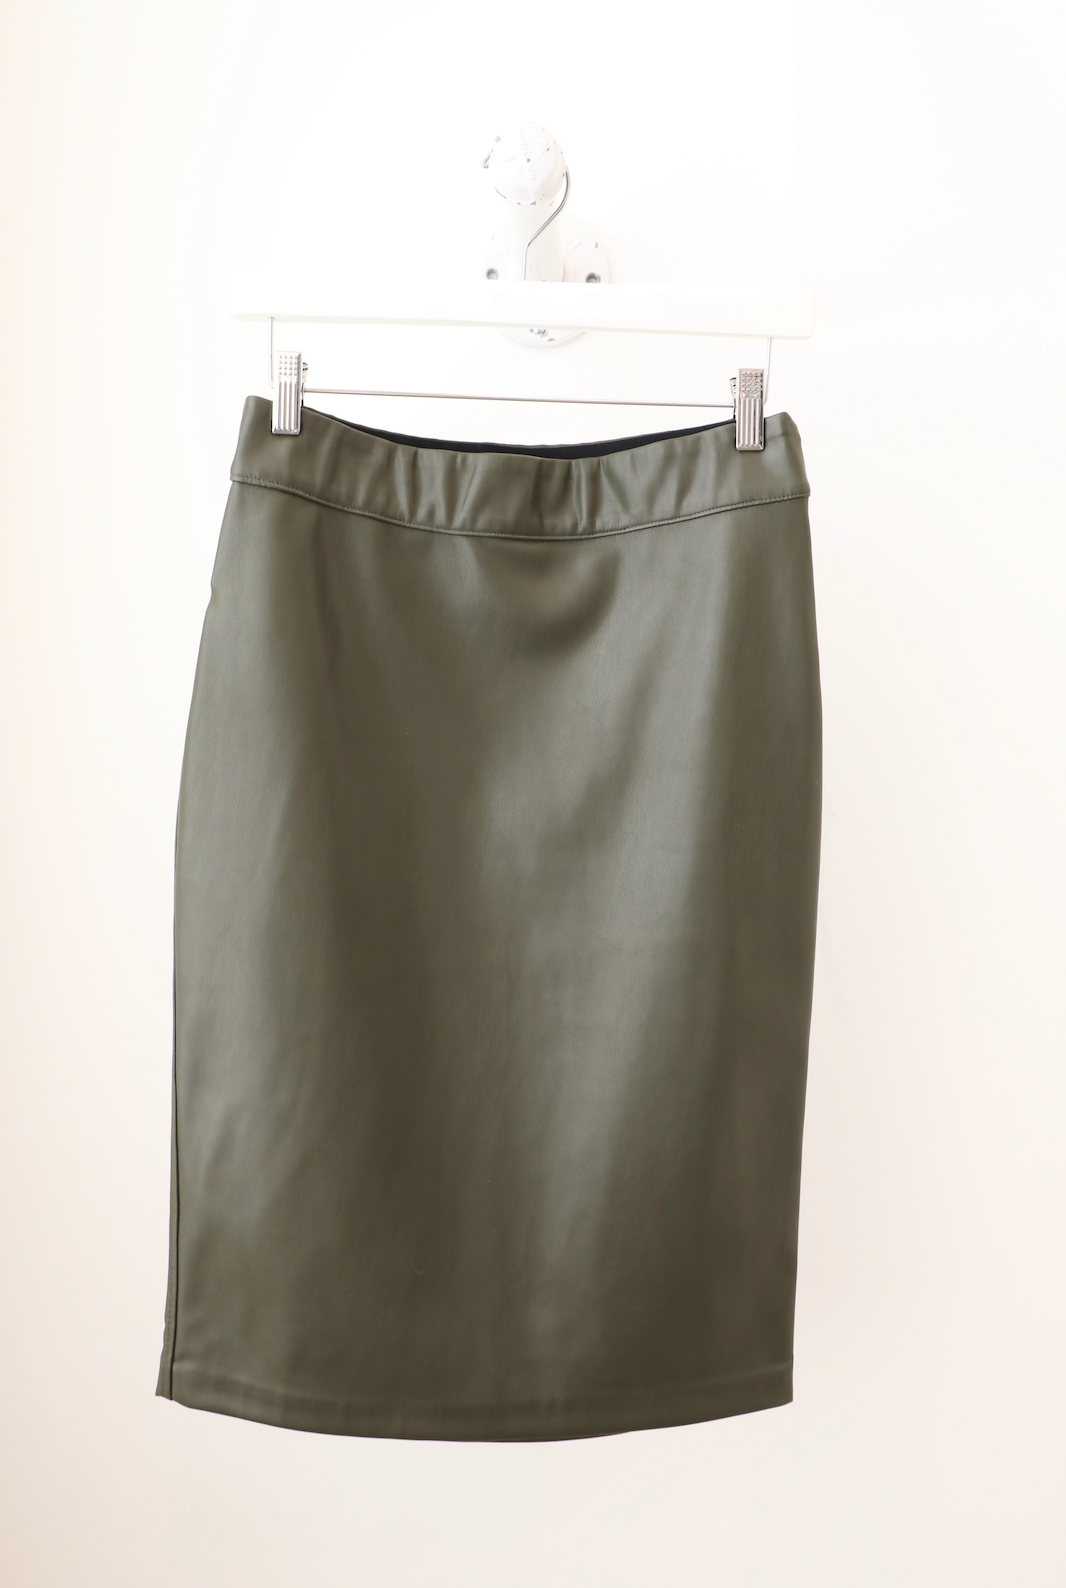 Brochu Walker - Drew Skirt in Evergreen